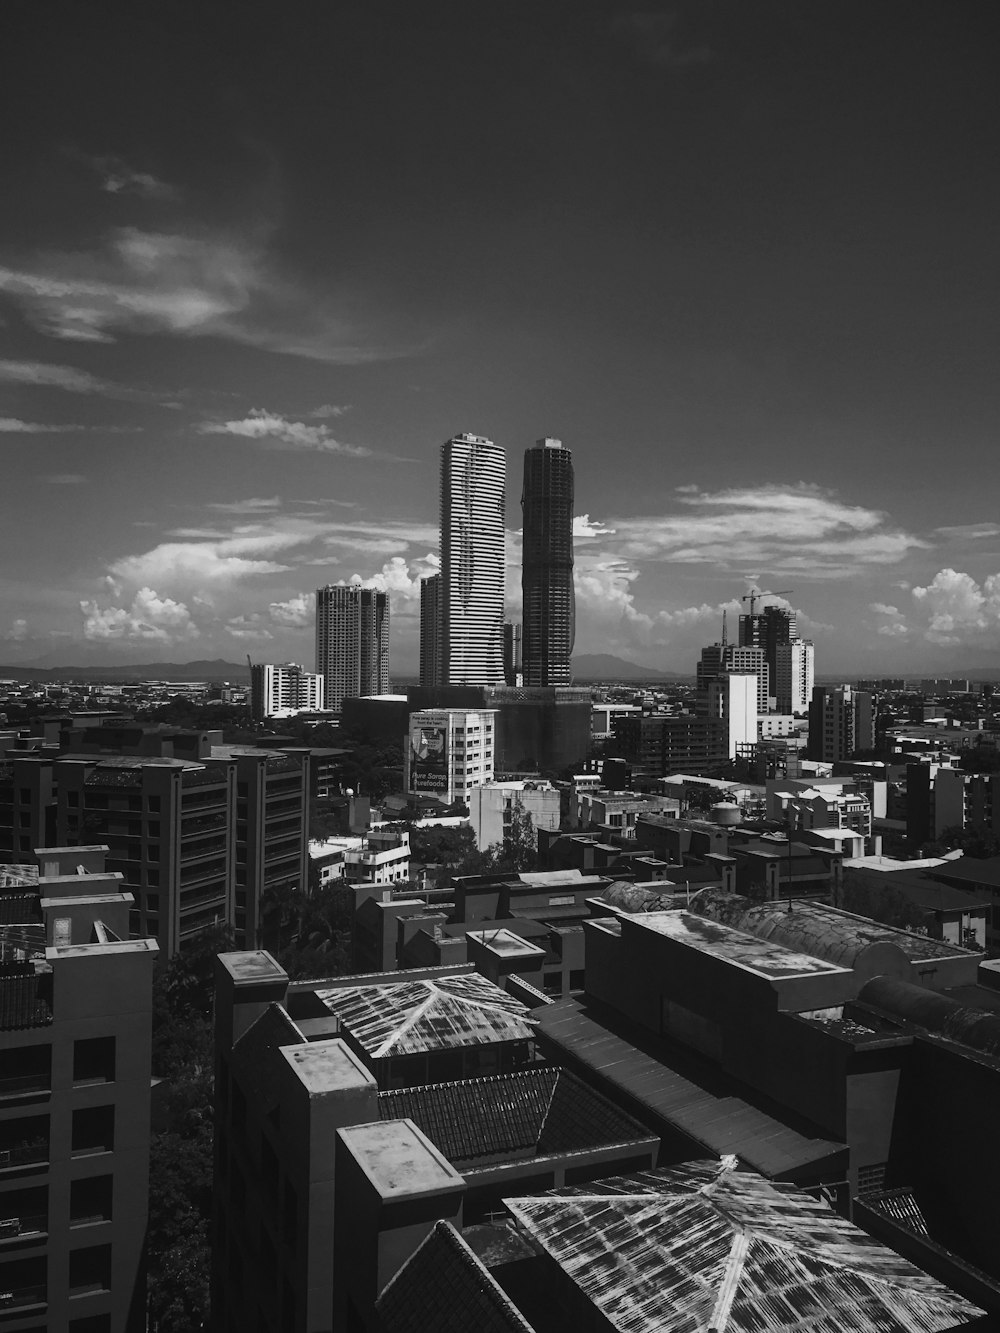 Photographie en niveaux de gris de la ville pendant la journée